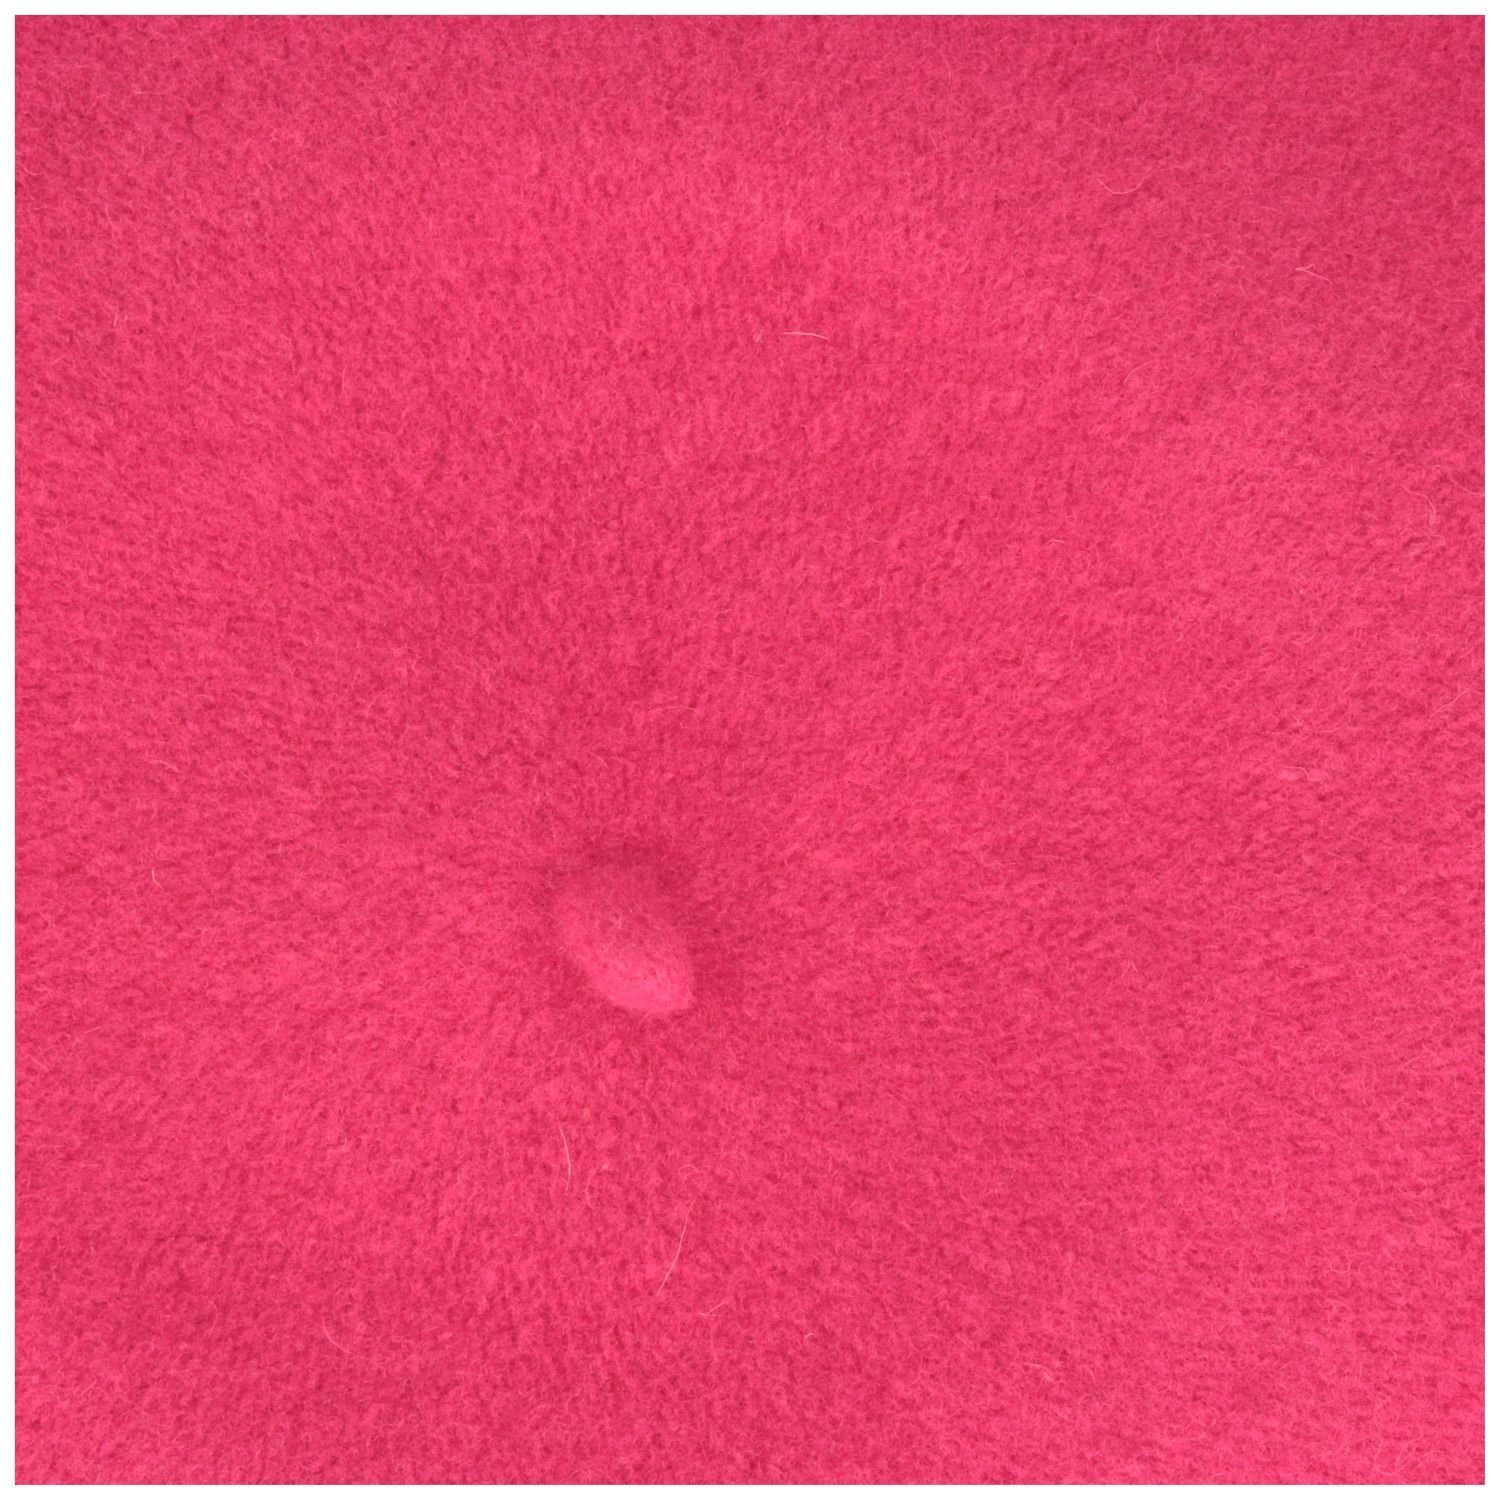 Baskenmütze Kopka aus Schurwolle pink 100% klassisch